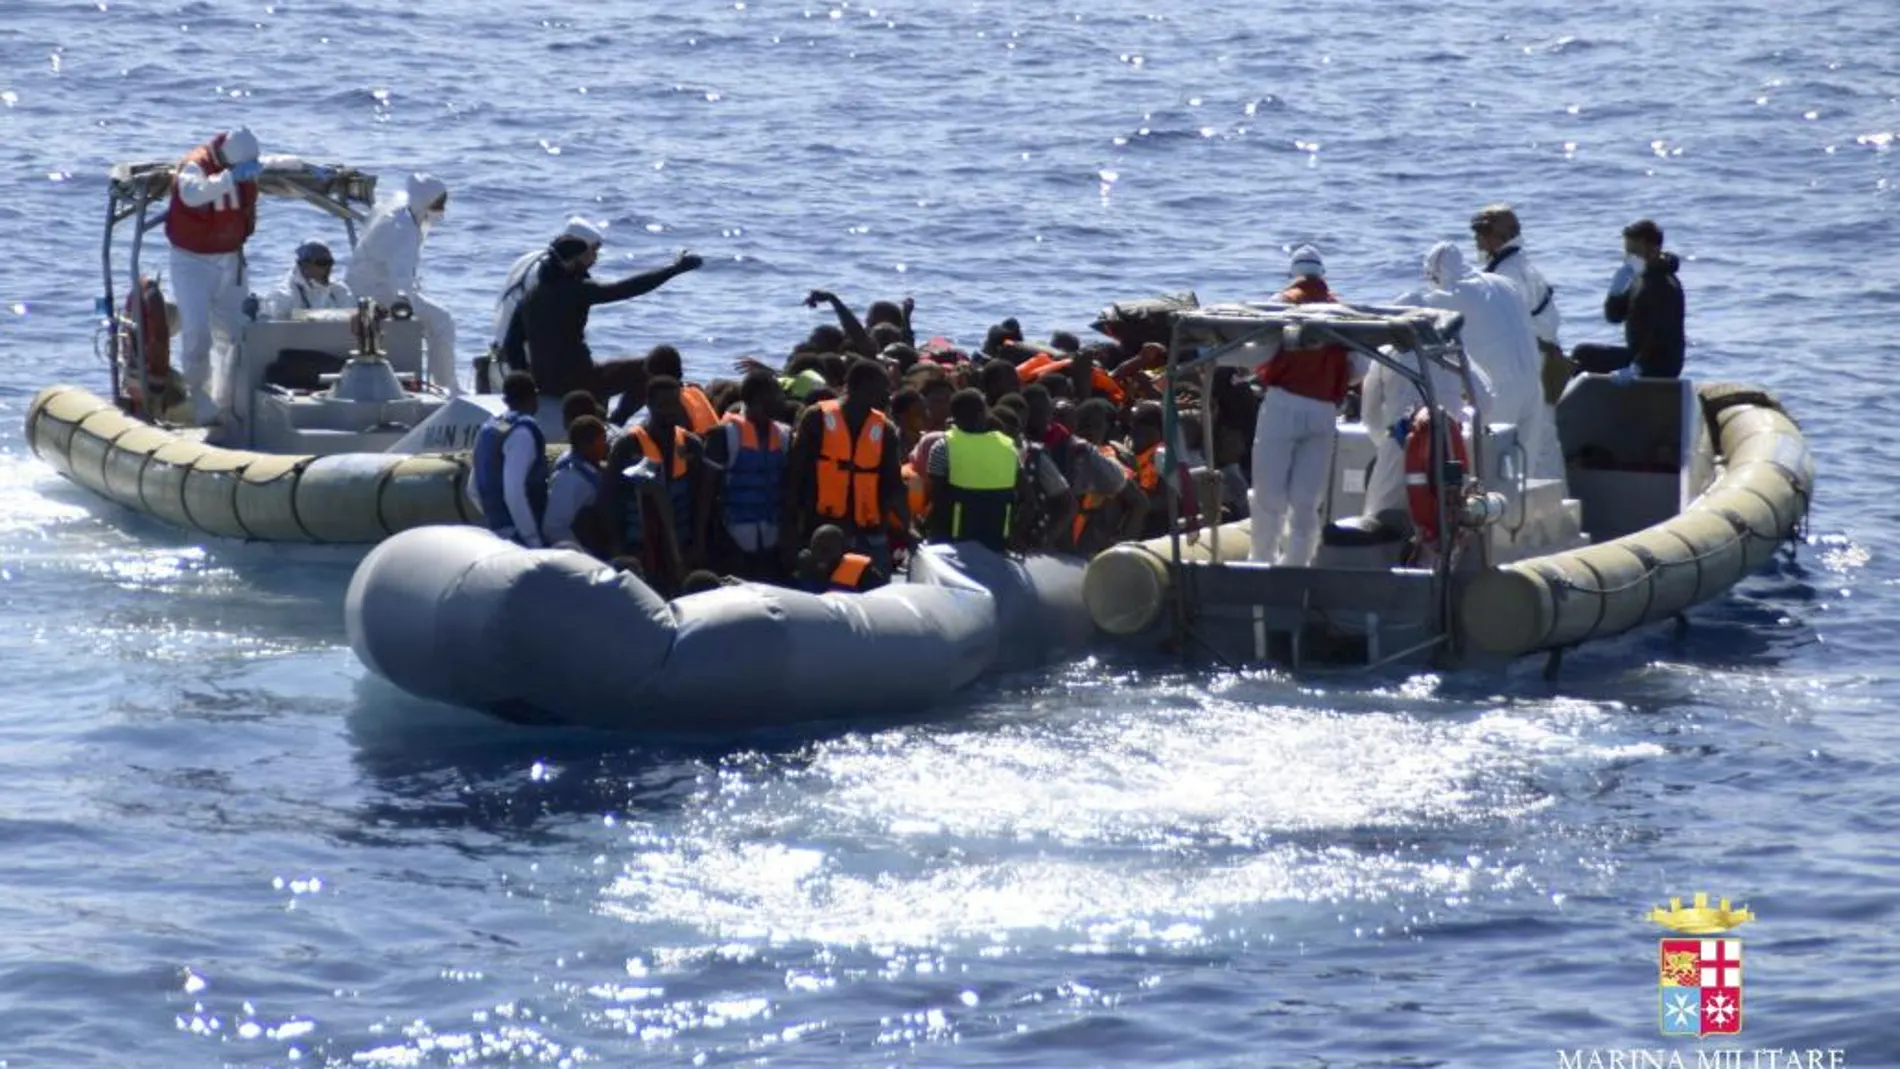 Fotografía facilitada por la Guardia Costera de Italia. Más de 800 personas que navegaban a la deriva en el mar Mediterráneo han sido socorridas hoy en diversas operaciones de salvamento.